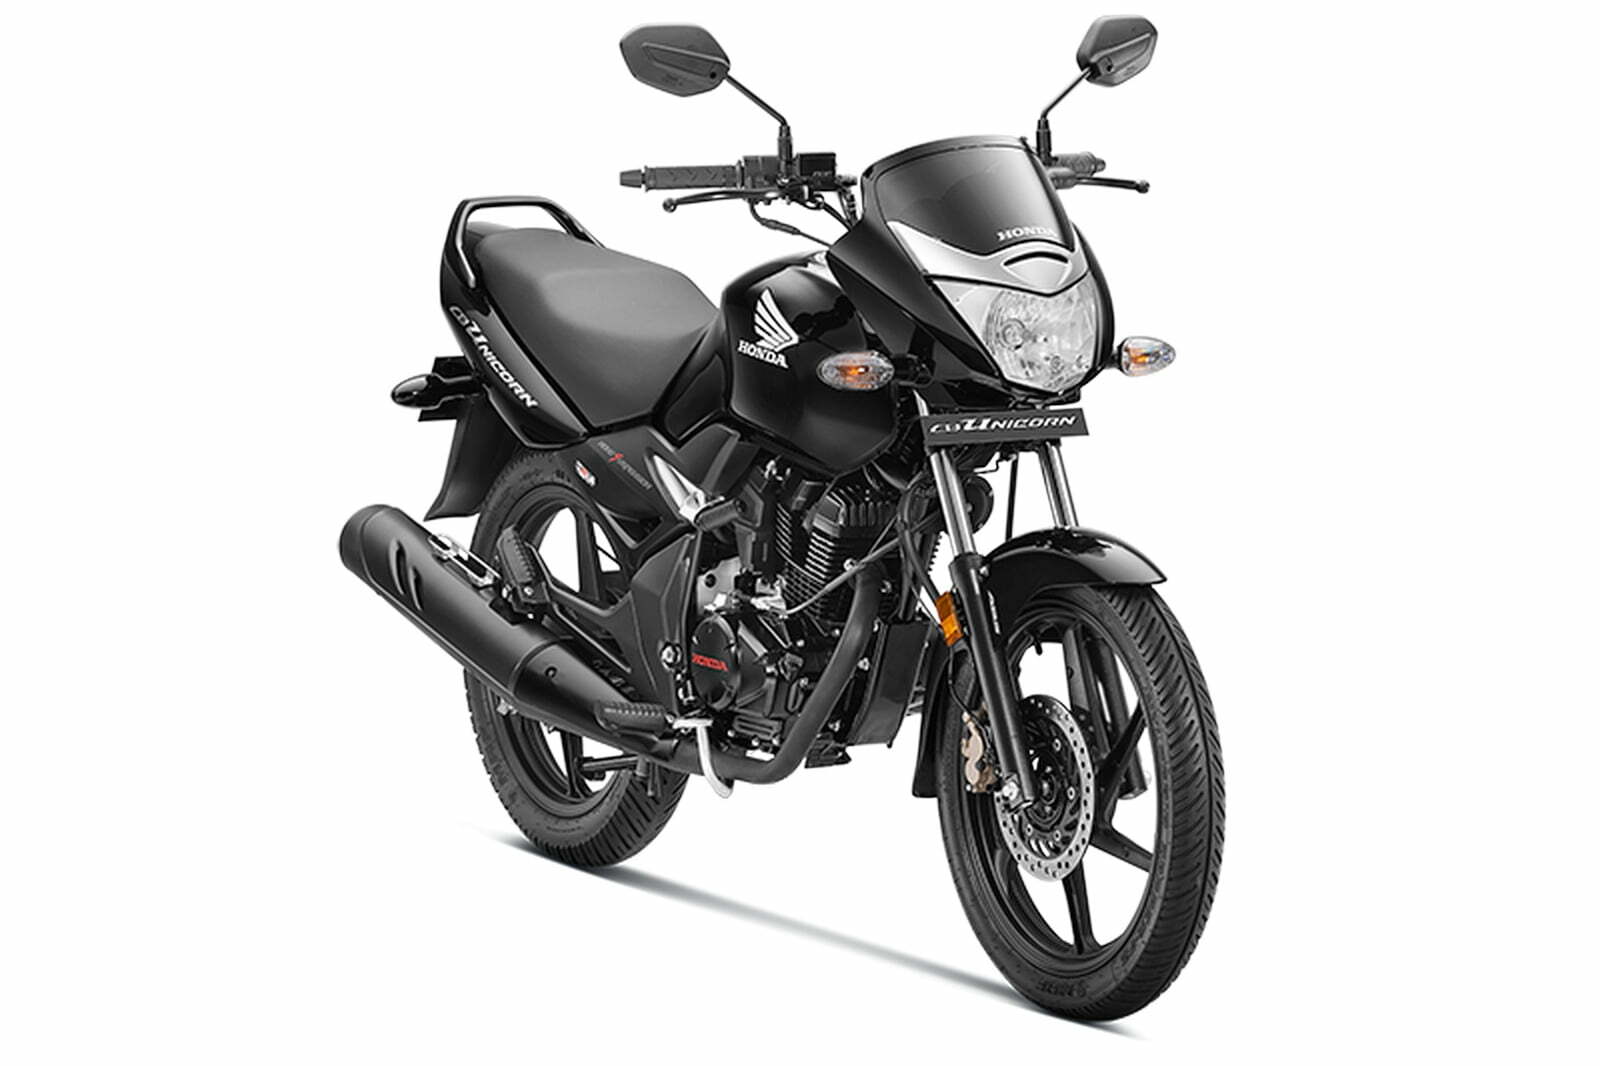 Honda Unicorn 150 New Model 2020 Price In India